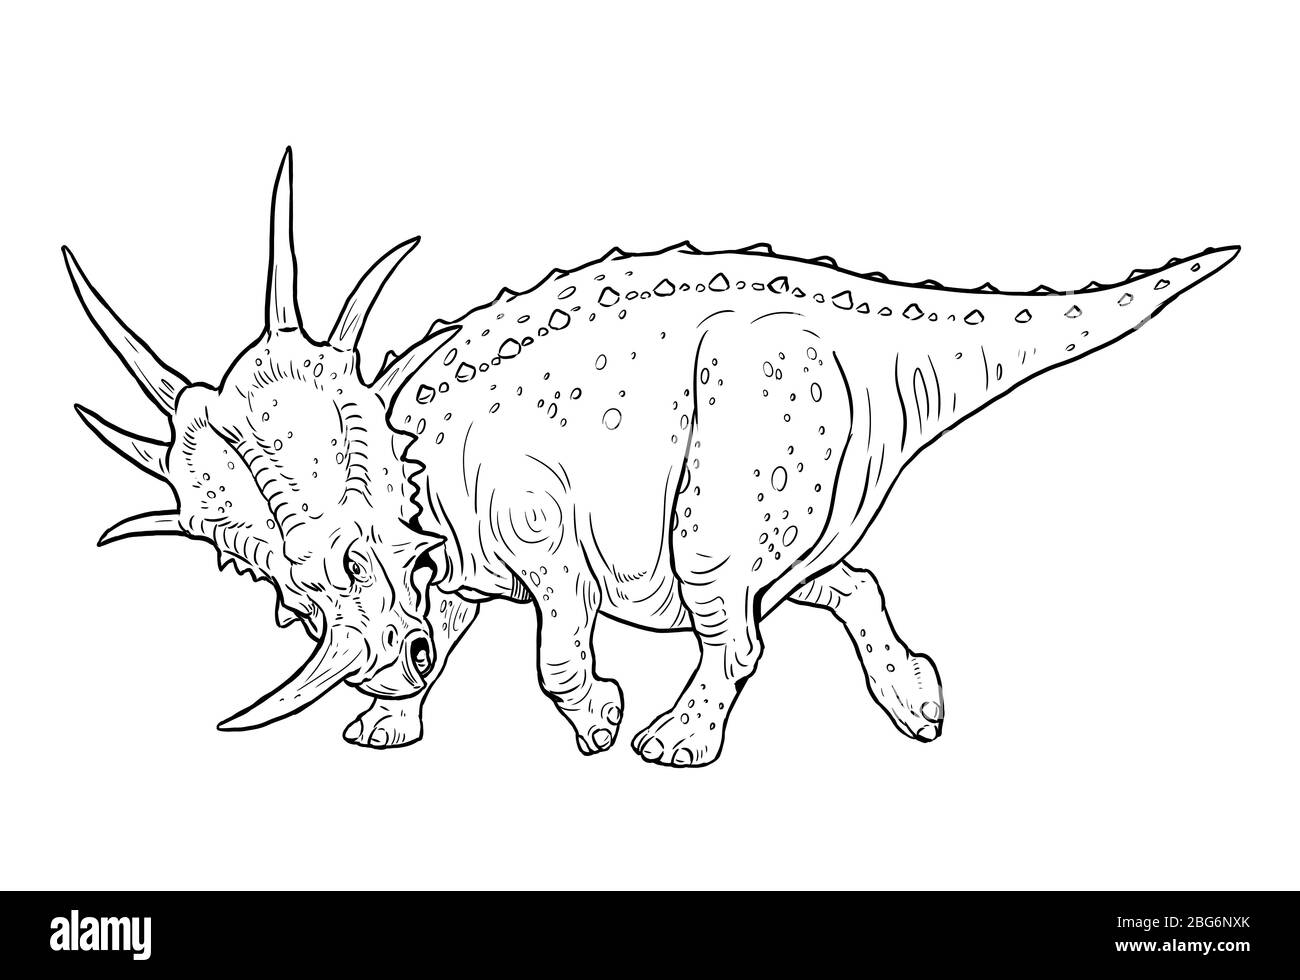 Herbivorous dinosaur - Styracosaurus. Dino outline drawing. Stock Photo